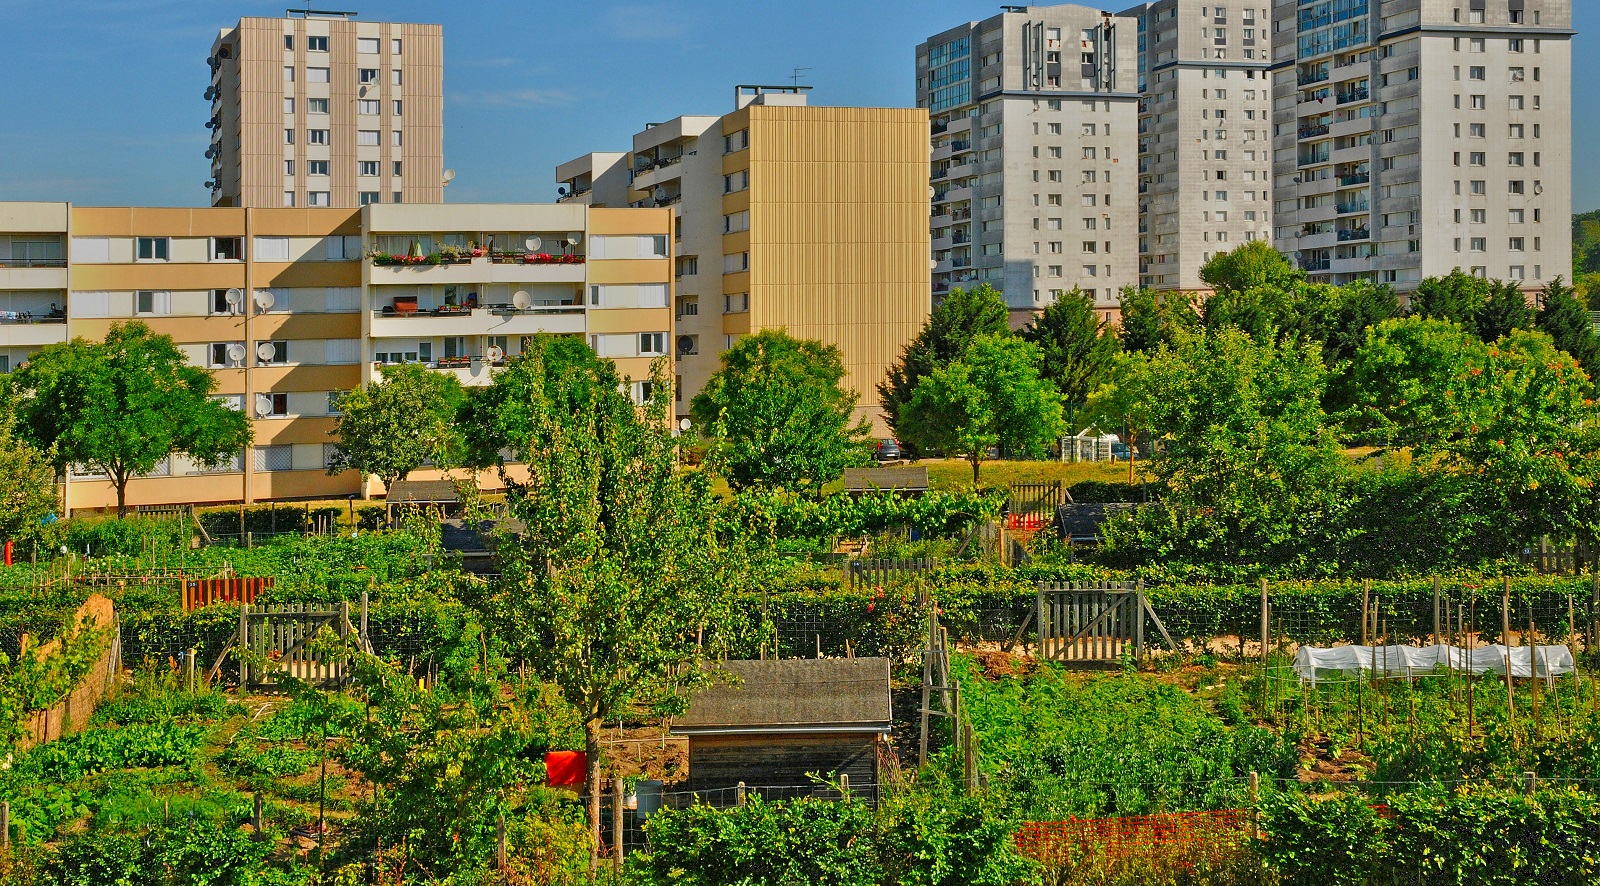 Jardins partagés dans les habitations des&nbsp;Mureaux, dans les Yvelines&nbsp;(78).&nbsp;© PackShot, Adobe Stock